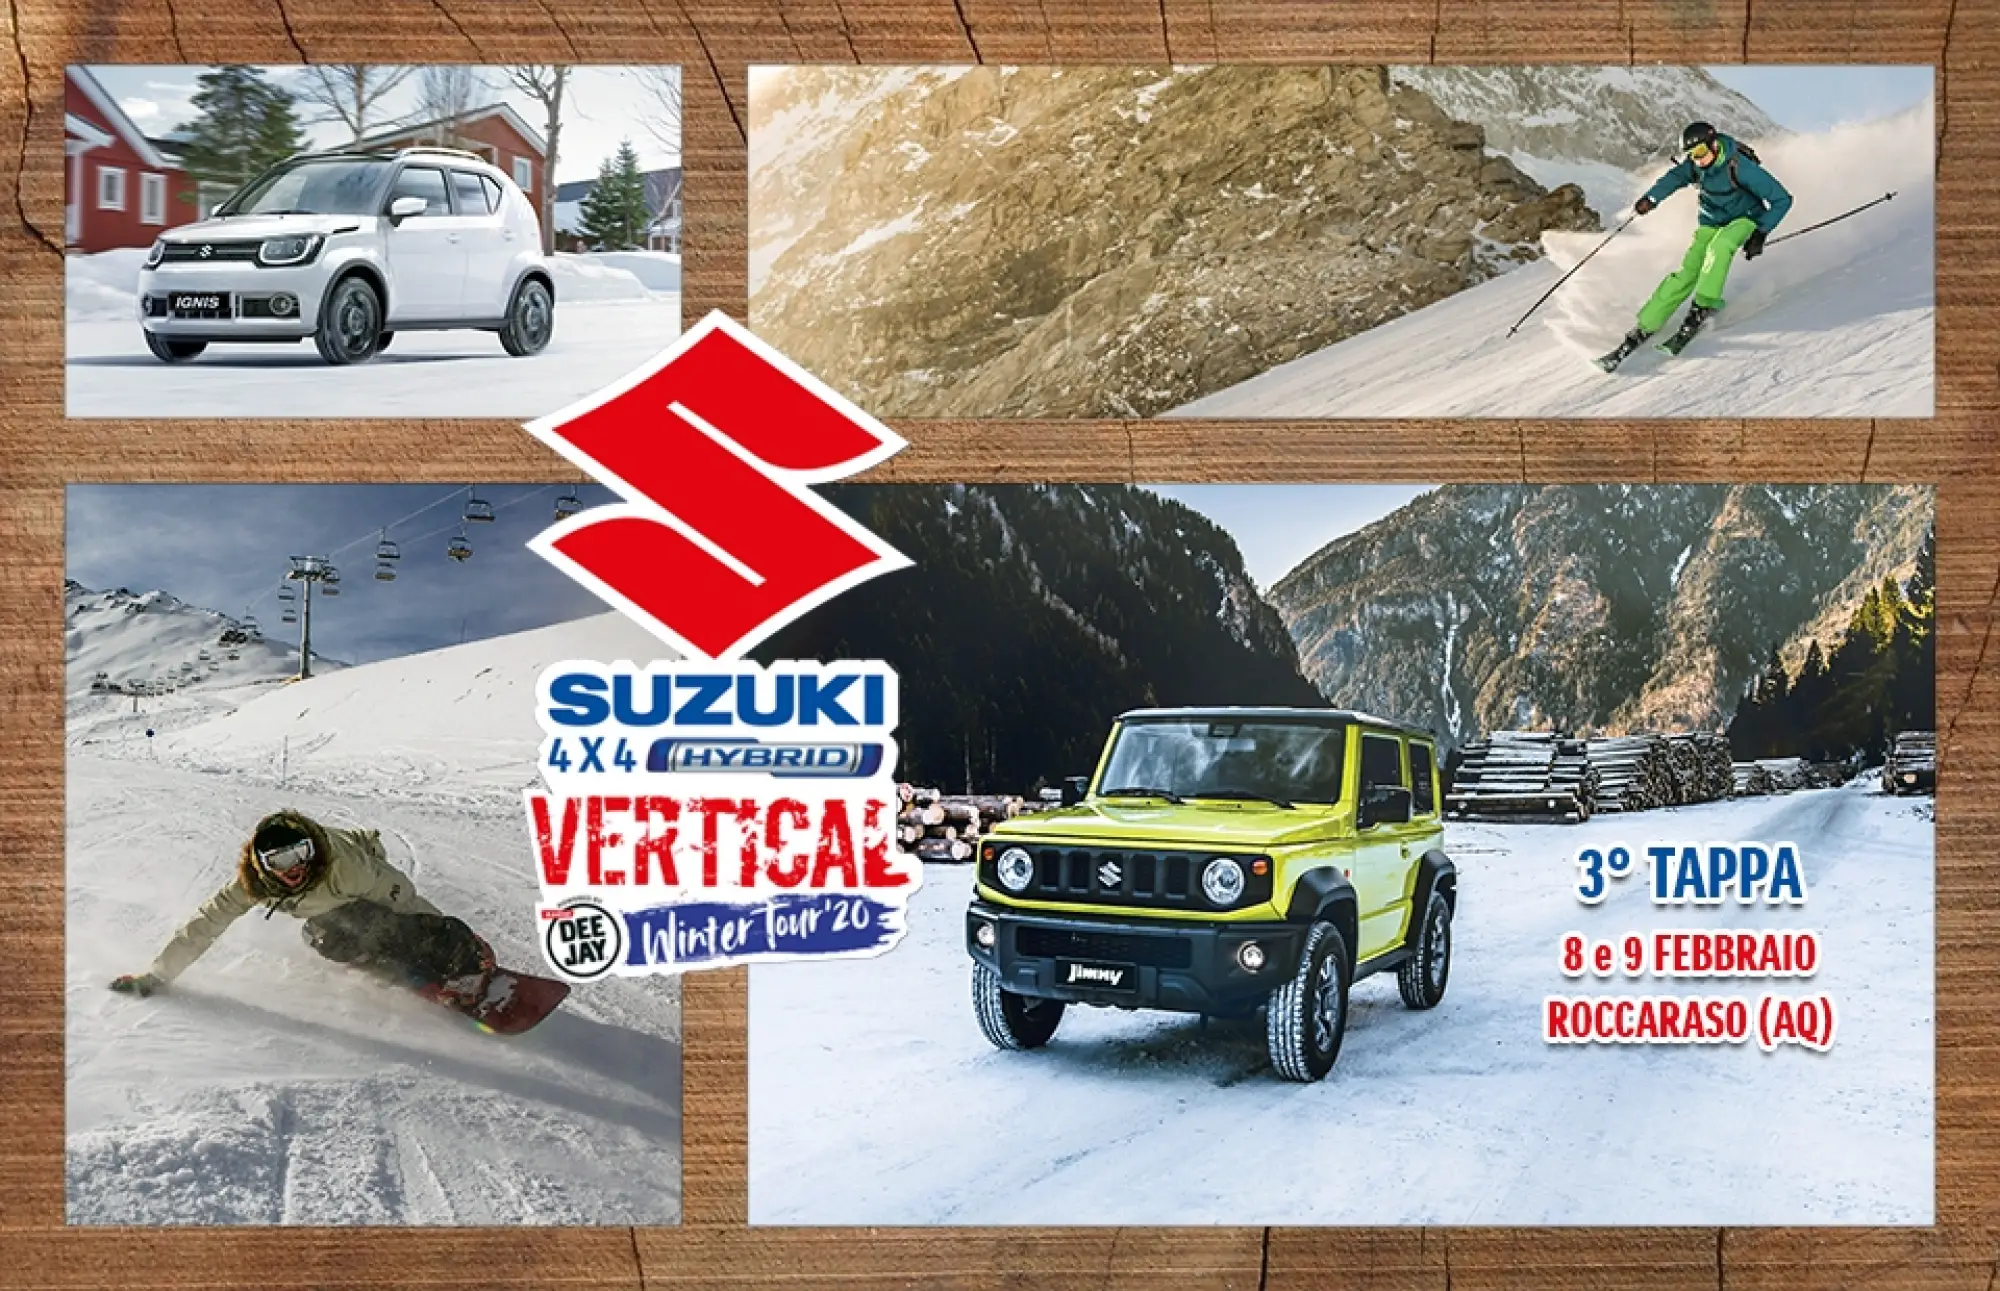 Suzuki 4x4 Hybrid Vertical Winter Tour 2020 - 1